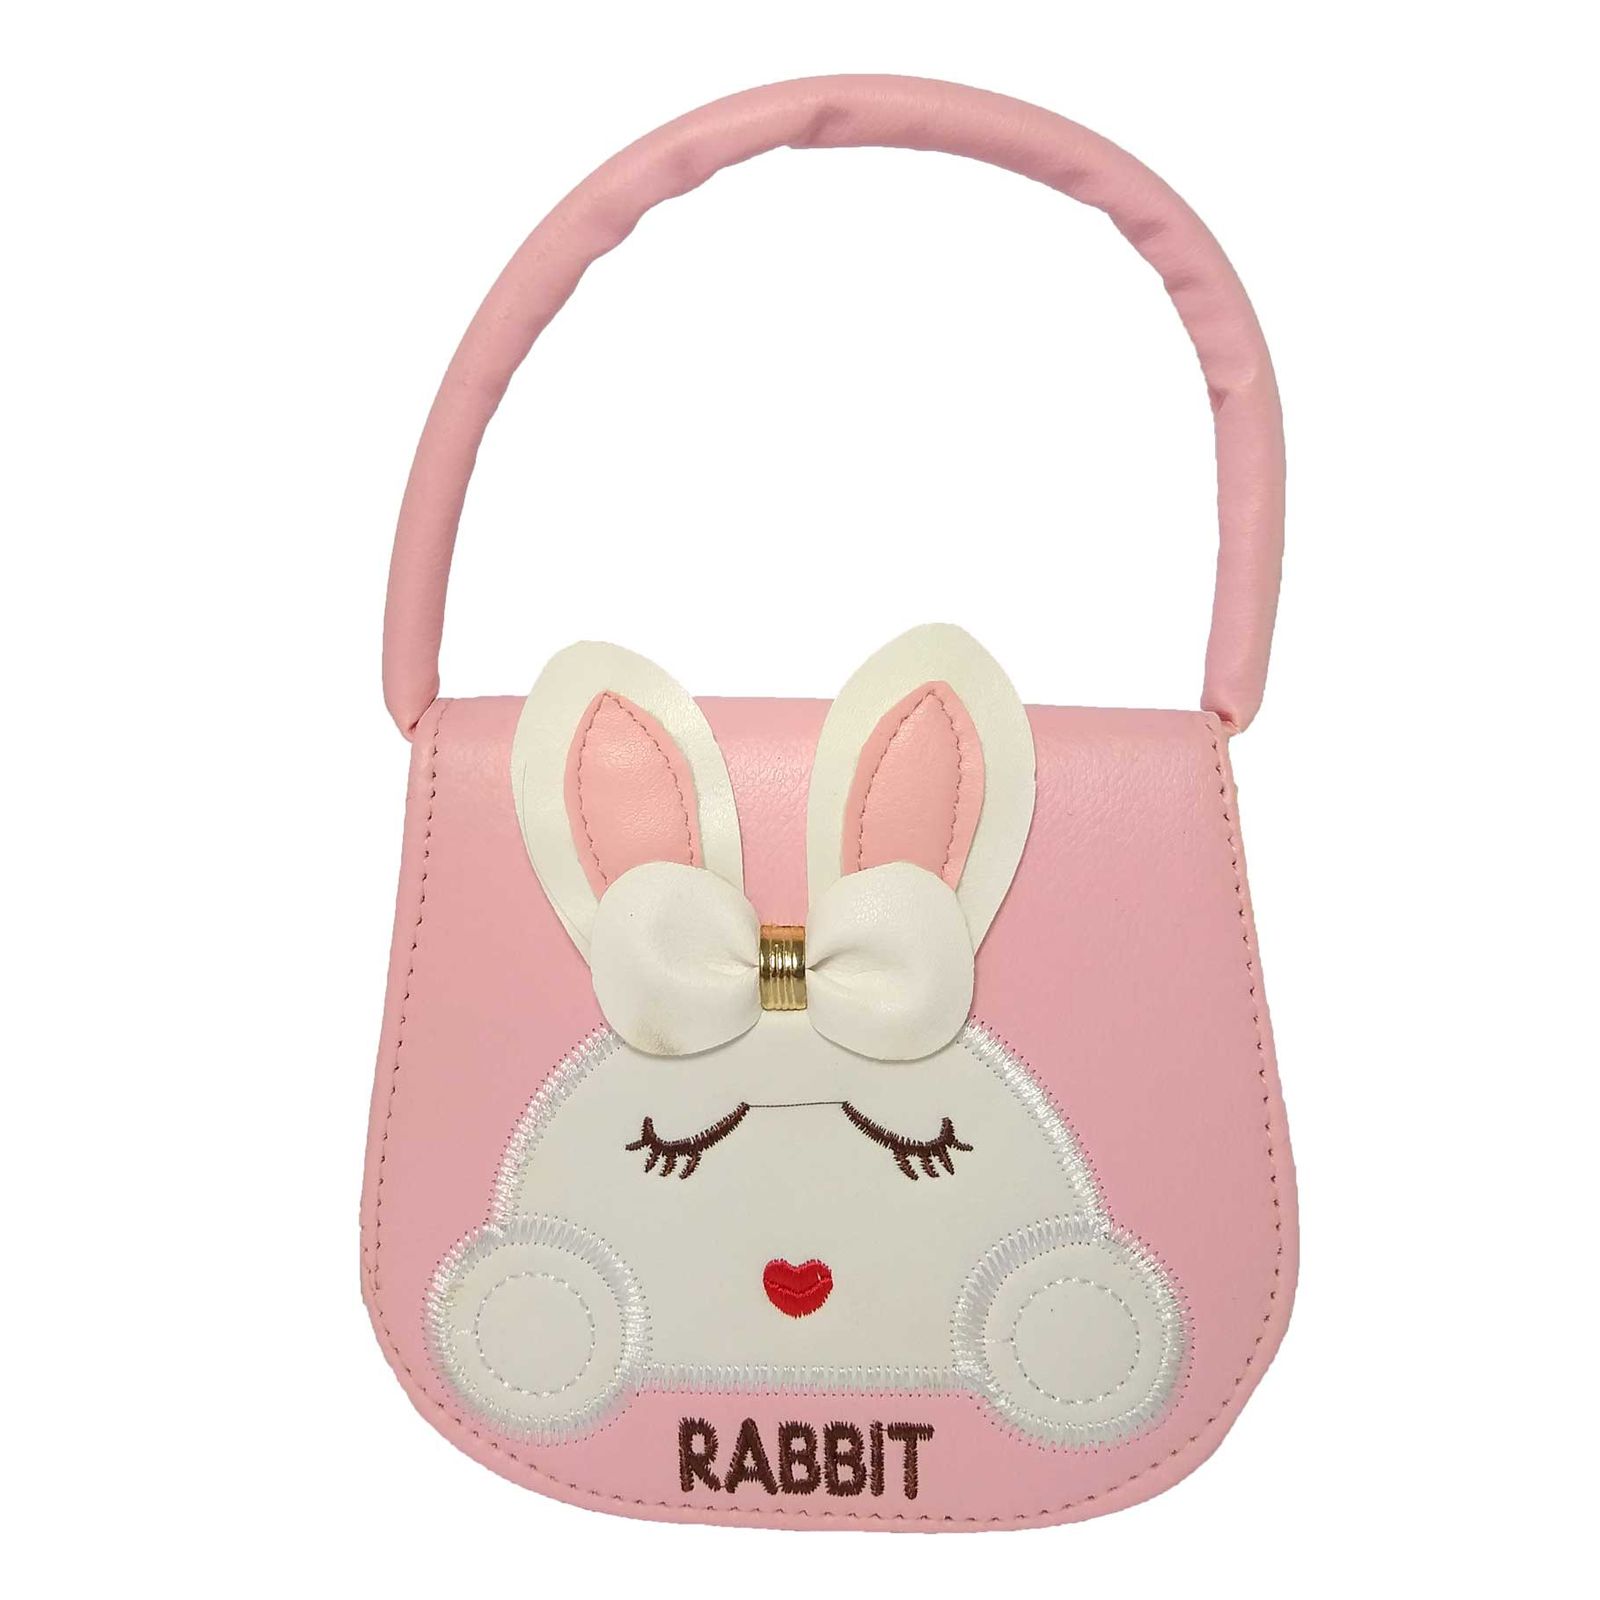 کیف دستی دخترانه طرح rabbit کد 0020 -  - 1